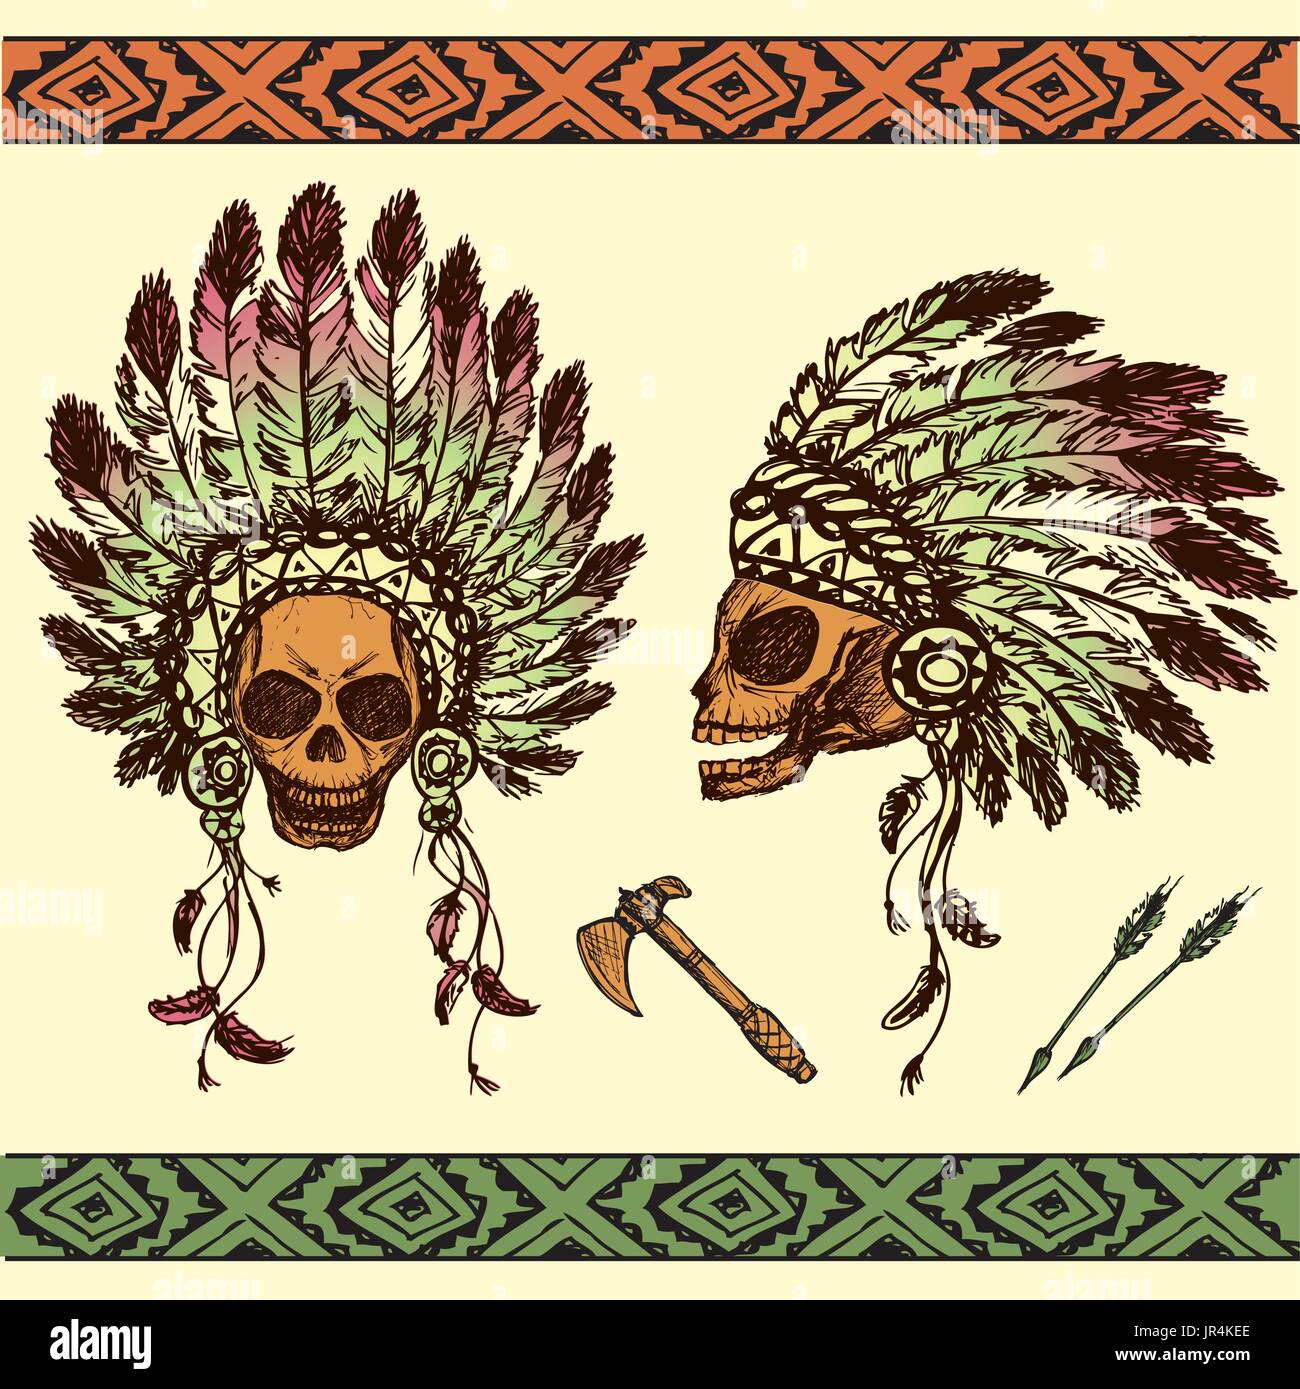 Vektor-Illustration des menschlichen Schädels in native American Indian chief Kopfschmuck mit tomahawks Stock Vektor